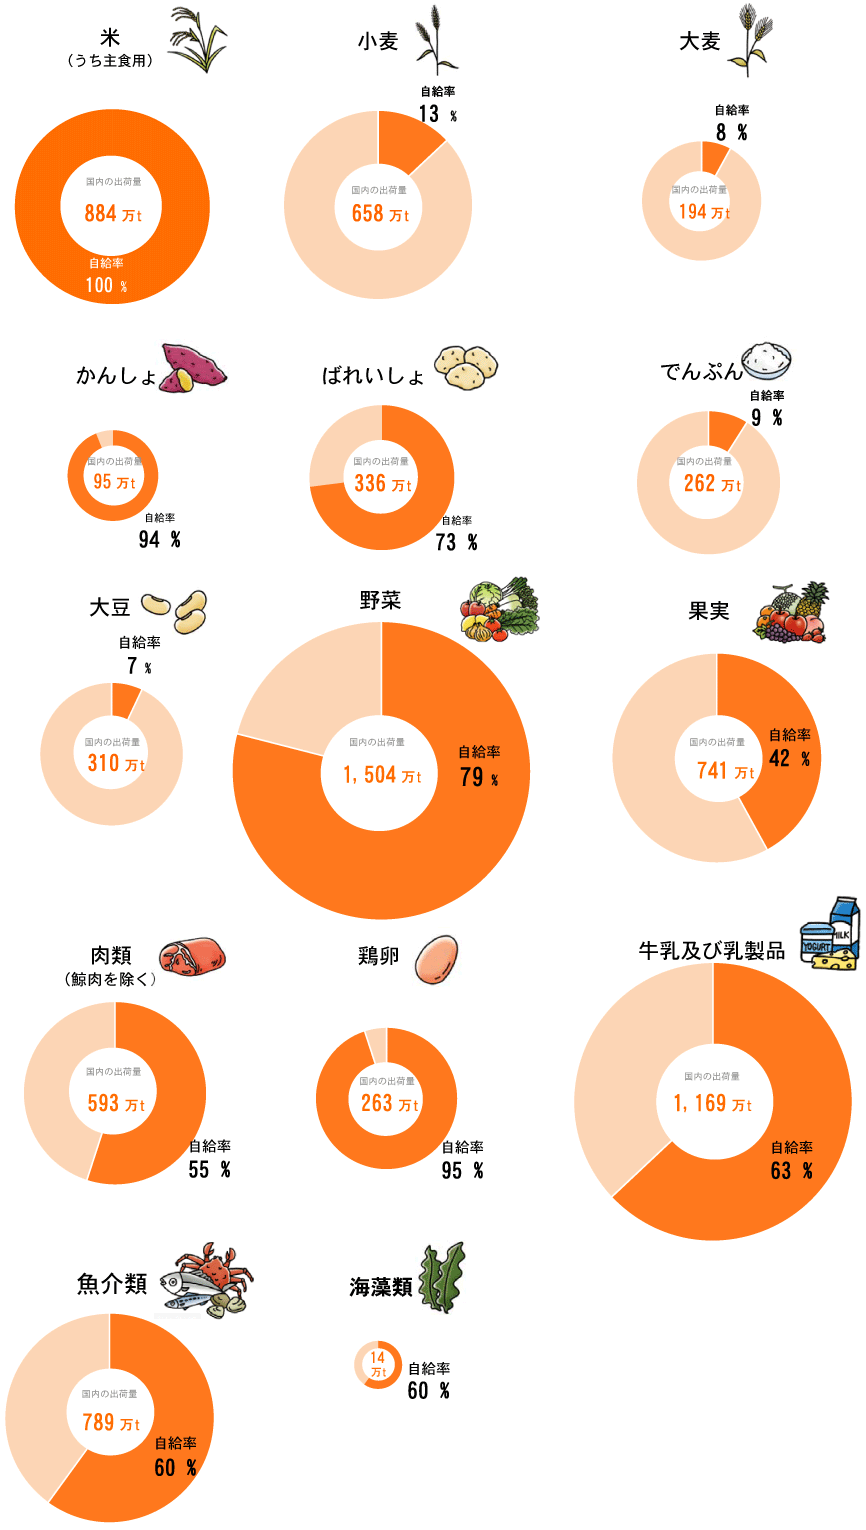 率 自給 牛肉 食料 日本 2018年度の肉類自給率は数量ベース51% 牛肉36%、豚肉48%、鶏肉64%で3畜種とも微減(食品産業新聞社ニュースWEB)